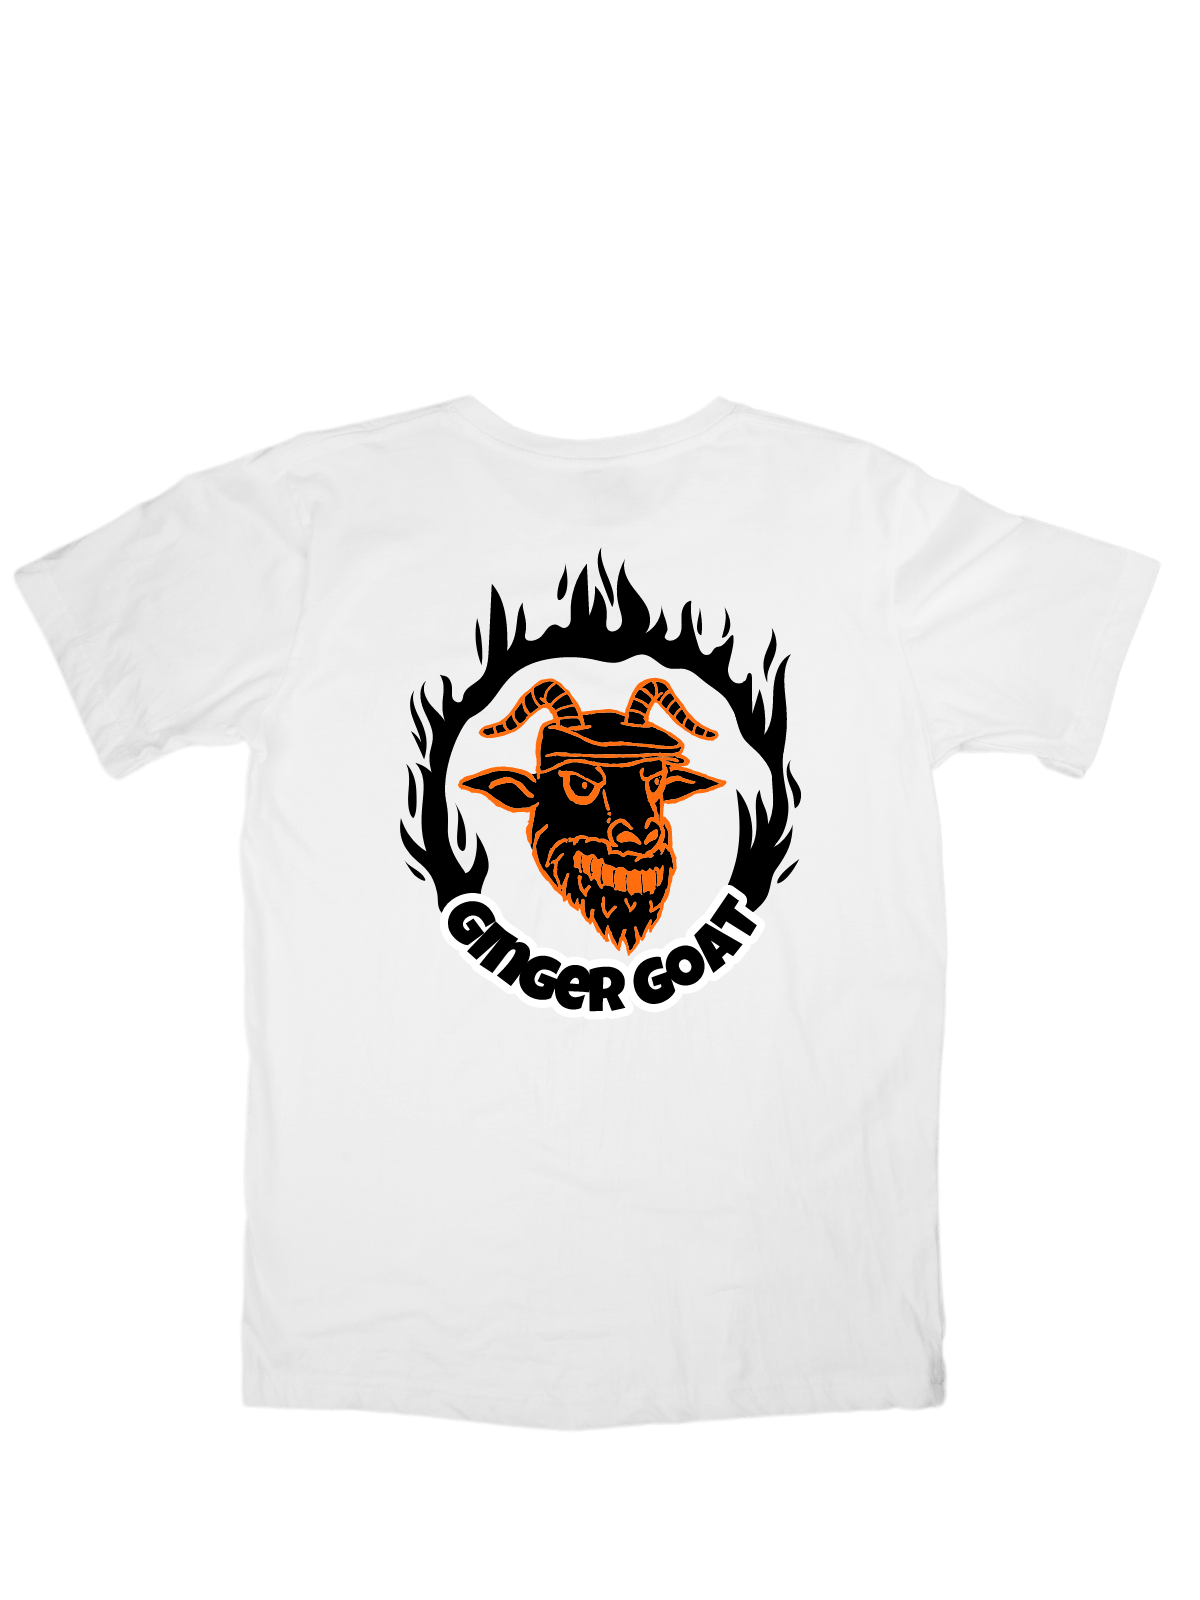 Ginger Goat - Ring of Fire T-Shirt - Ginger Goat